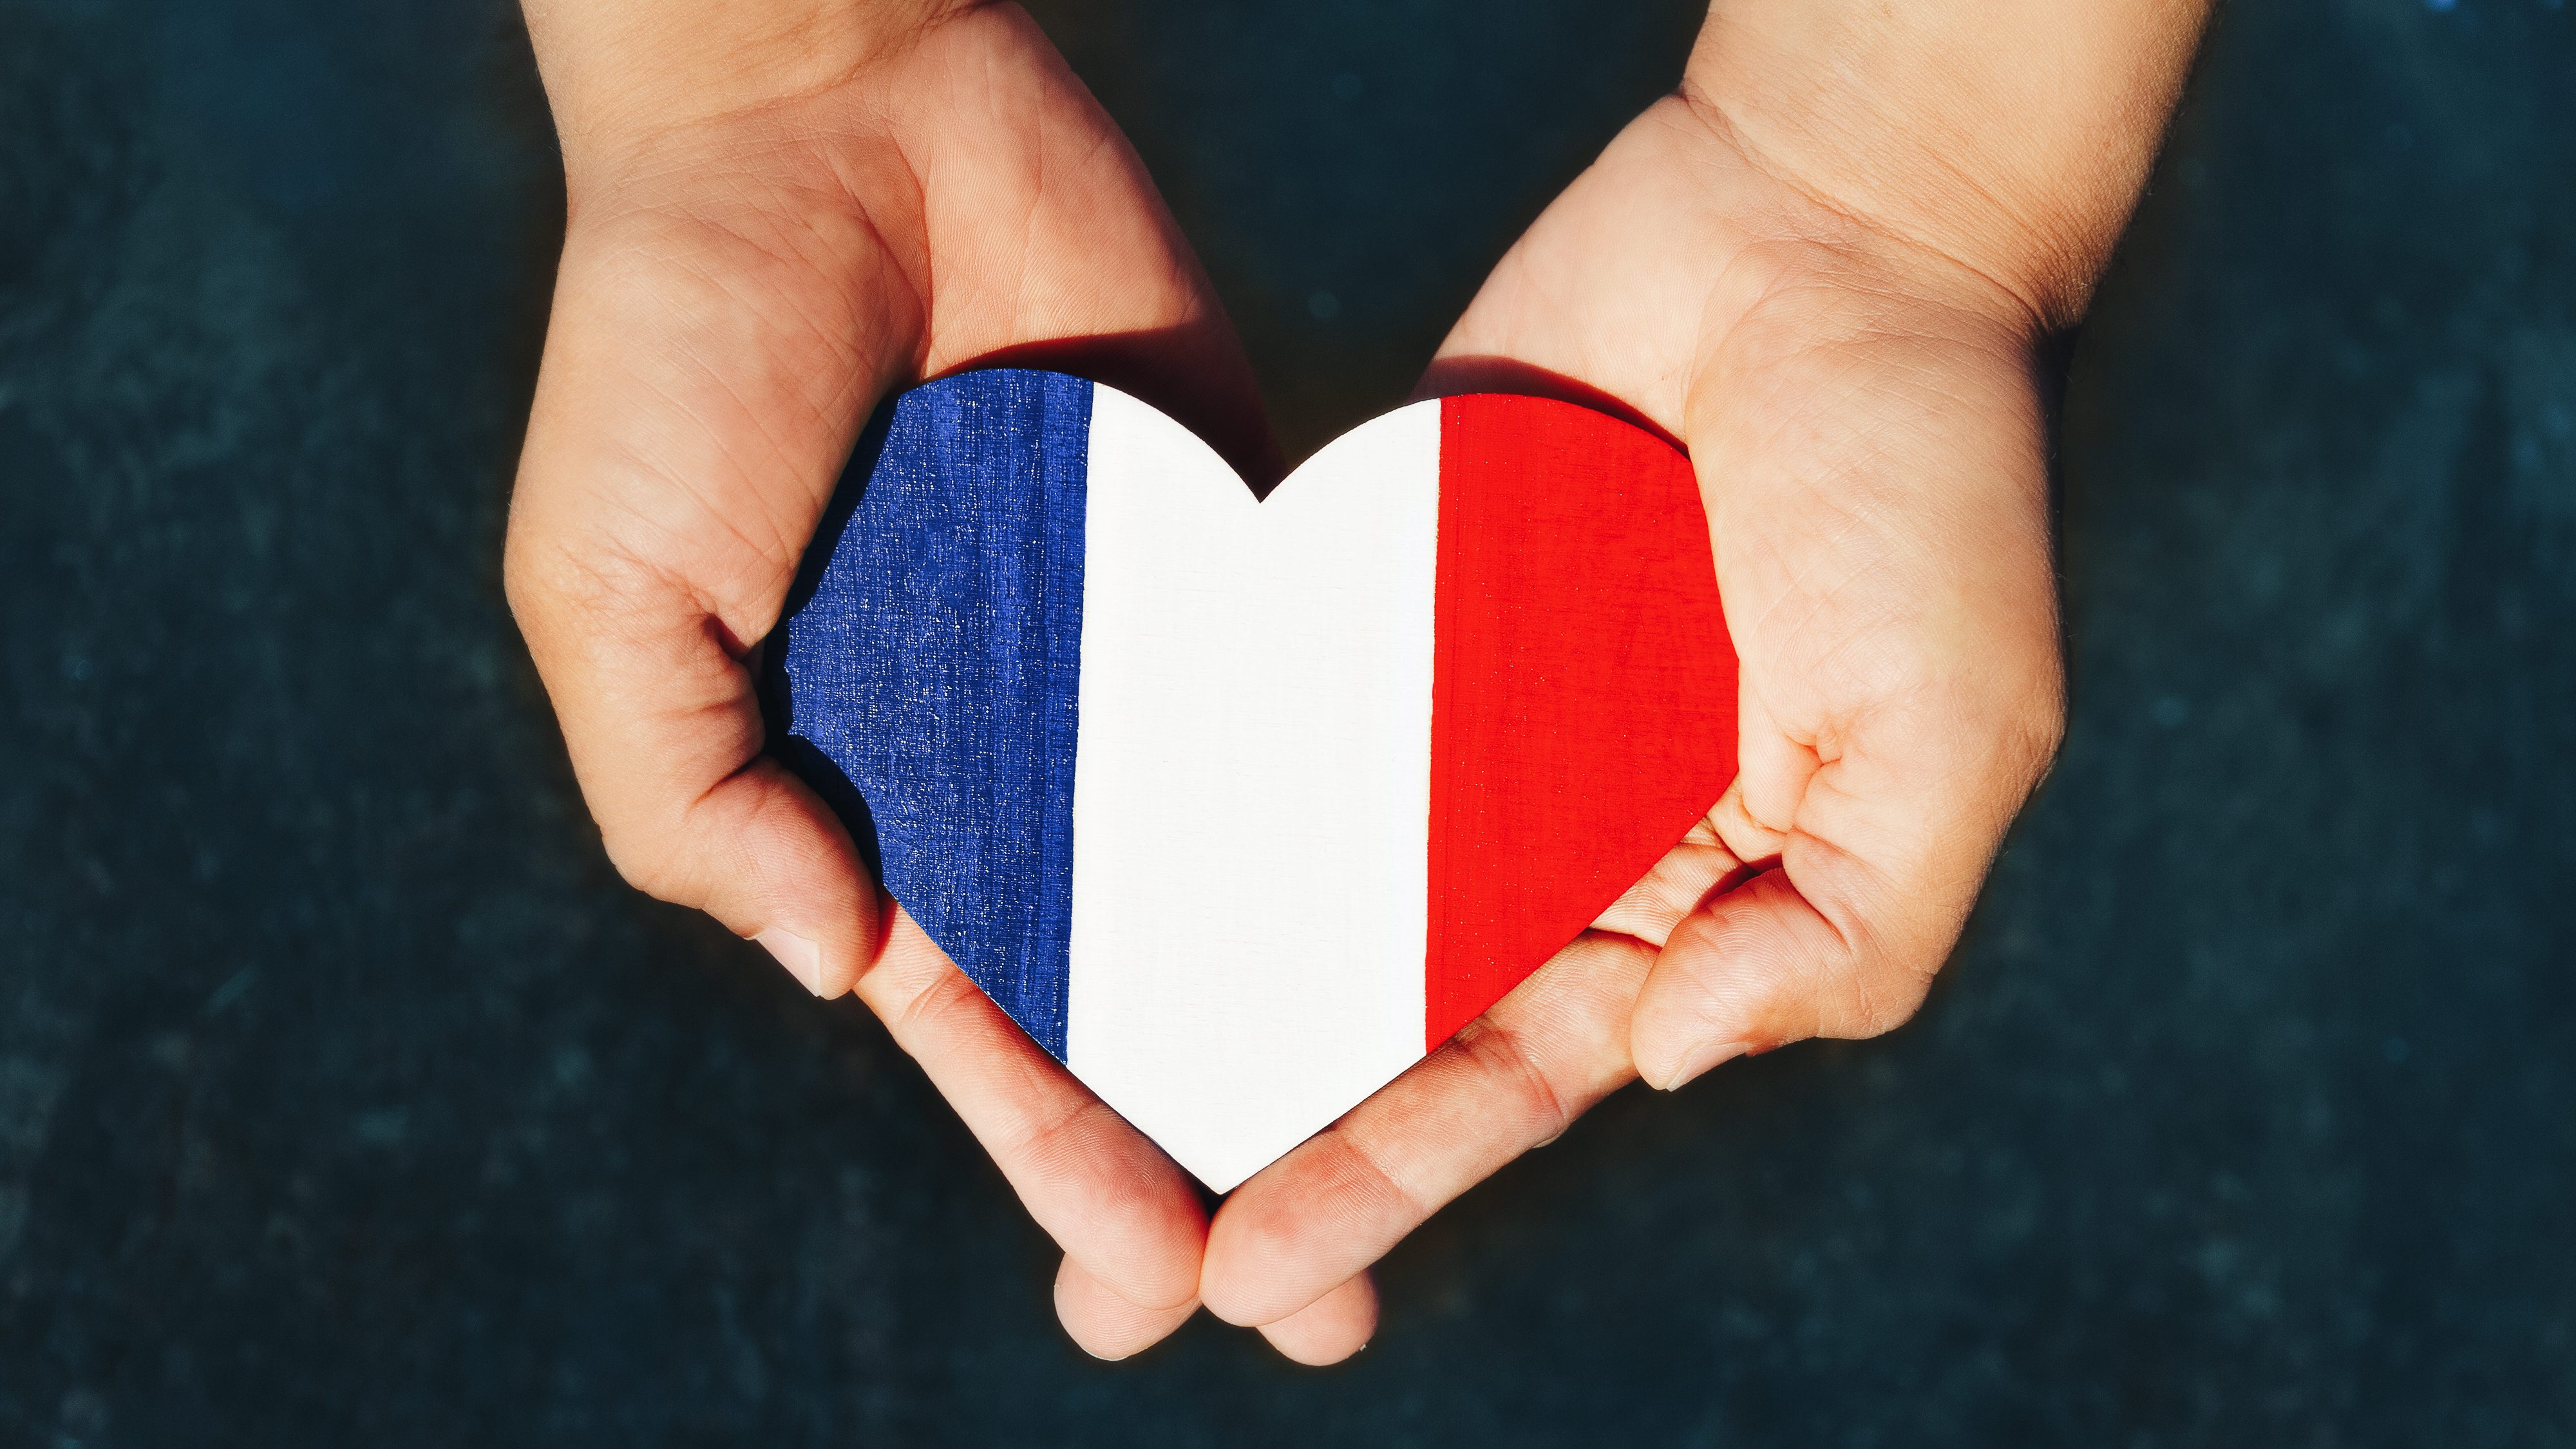 「愛国」をロマンチックに？　フランスで「右翼専用」のマッチングアプリが登場 | イデオロギーに基づく社交空間は今後も拡大するか